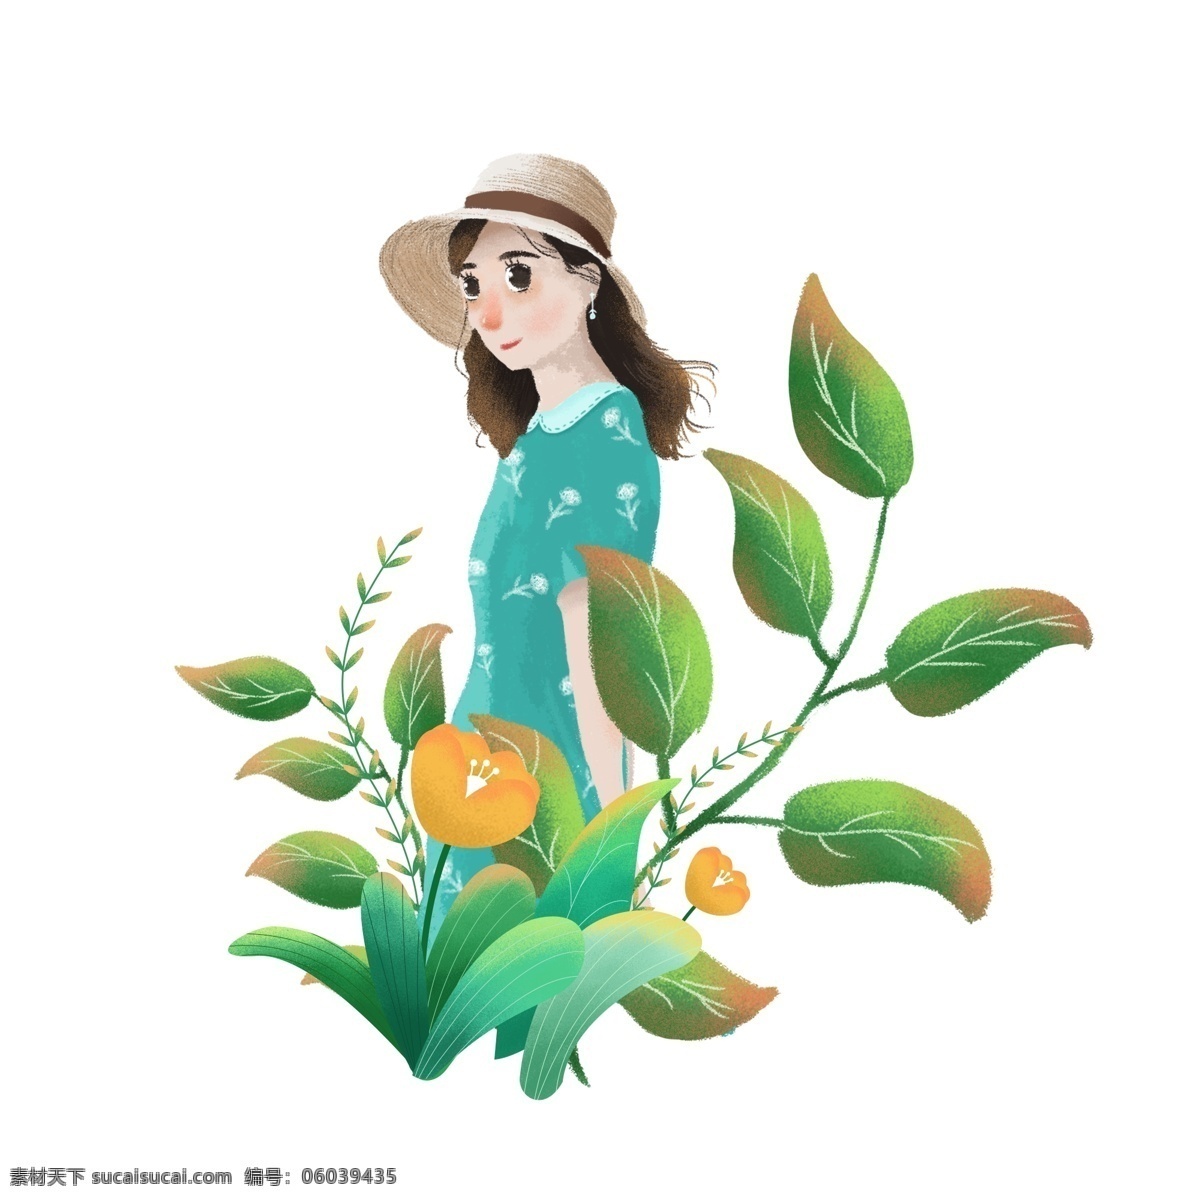 手绘 春天 花丛 中 戴 草帽 绿 裙 女孩 人物 元素 手绘女孩 人物元素 手绘鲜花 手绘植物 手绘绿叶 春天元素